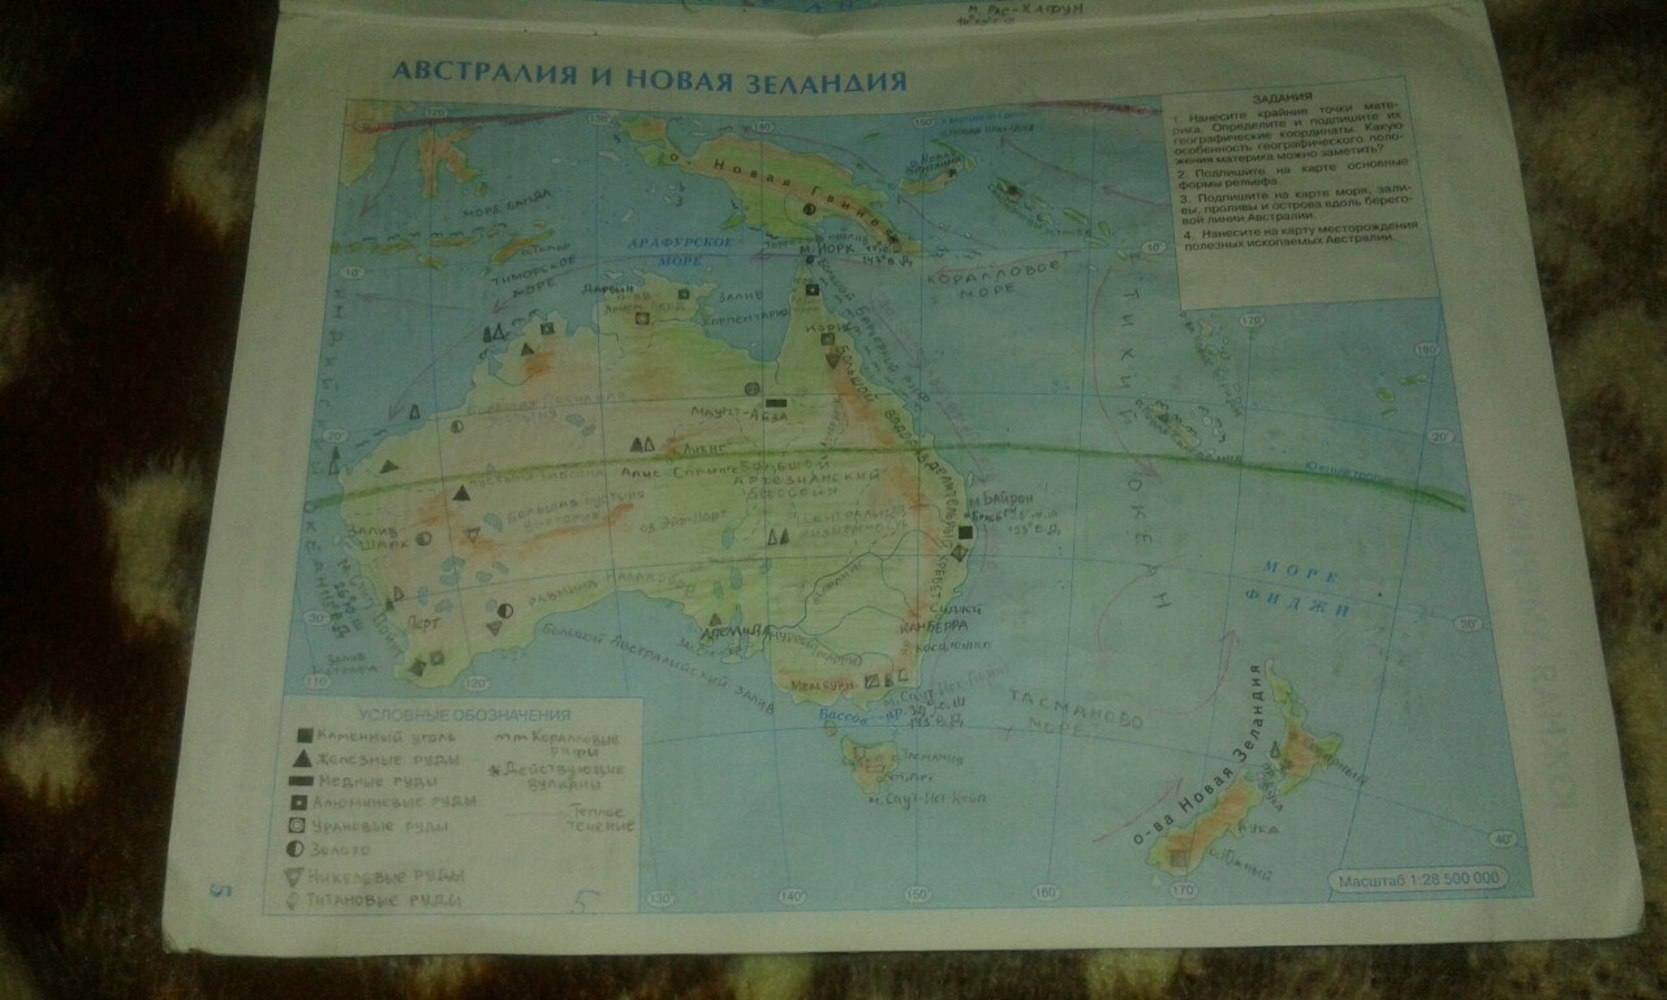 Контурная карта по географии 7 класс купить. География 7 класс контурные карты Австралия и новая Зеландия. Гдз контурная карта Австралии новая Зеландия седьмой класс география. Контурная карта Австралии и новой Зеландии 7 класс номенклатура. Гдз по контурной карте по географии 7 класс Австралия и новая Зеландия.